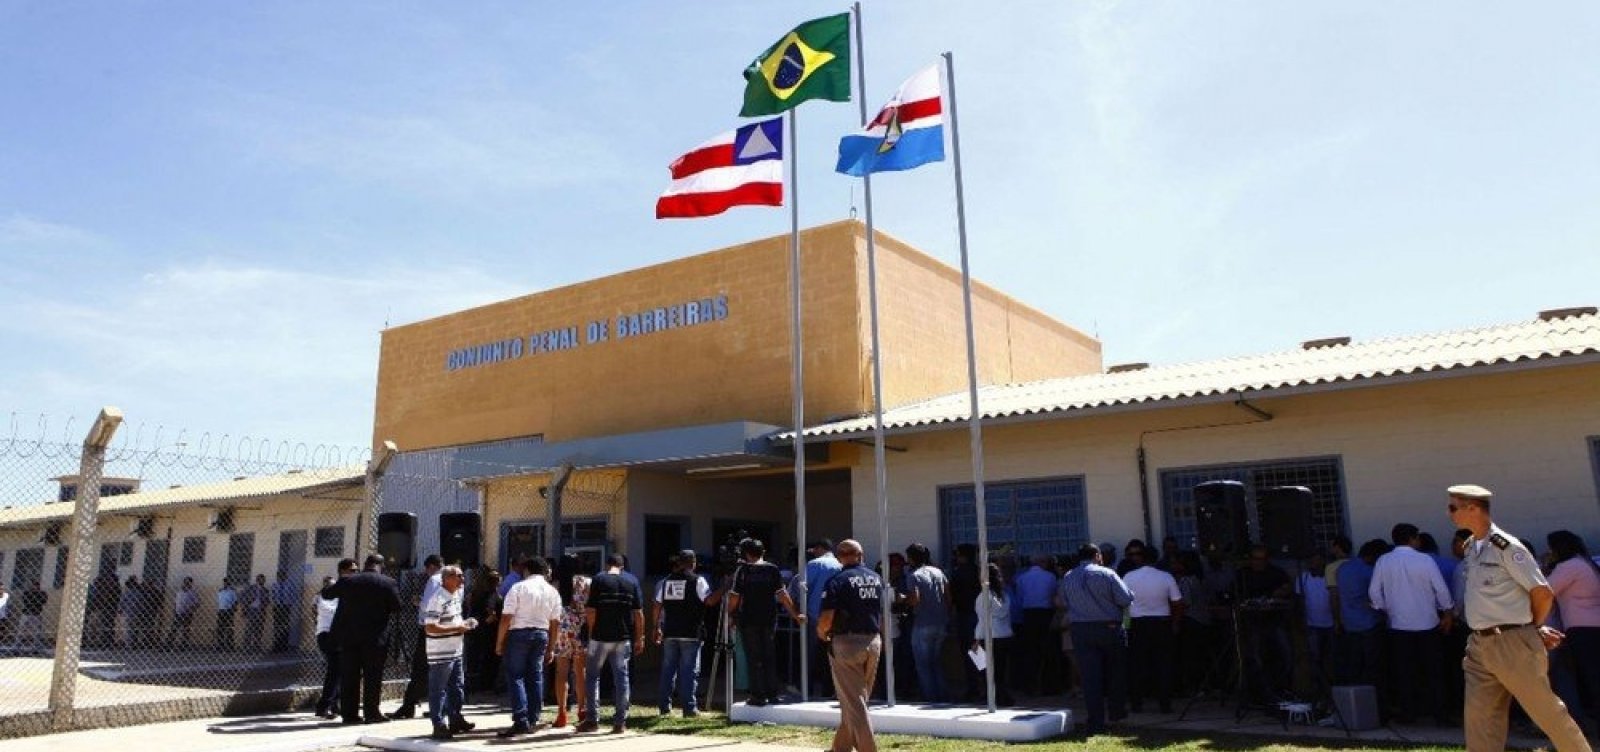 Justiça suspende interdição parcial do Conjunto Penal de Barreiras